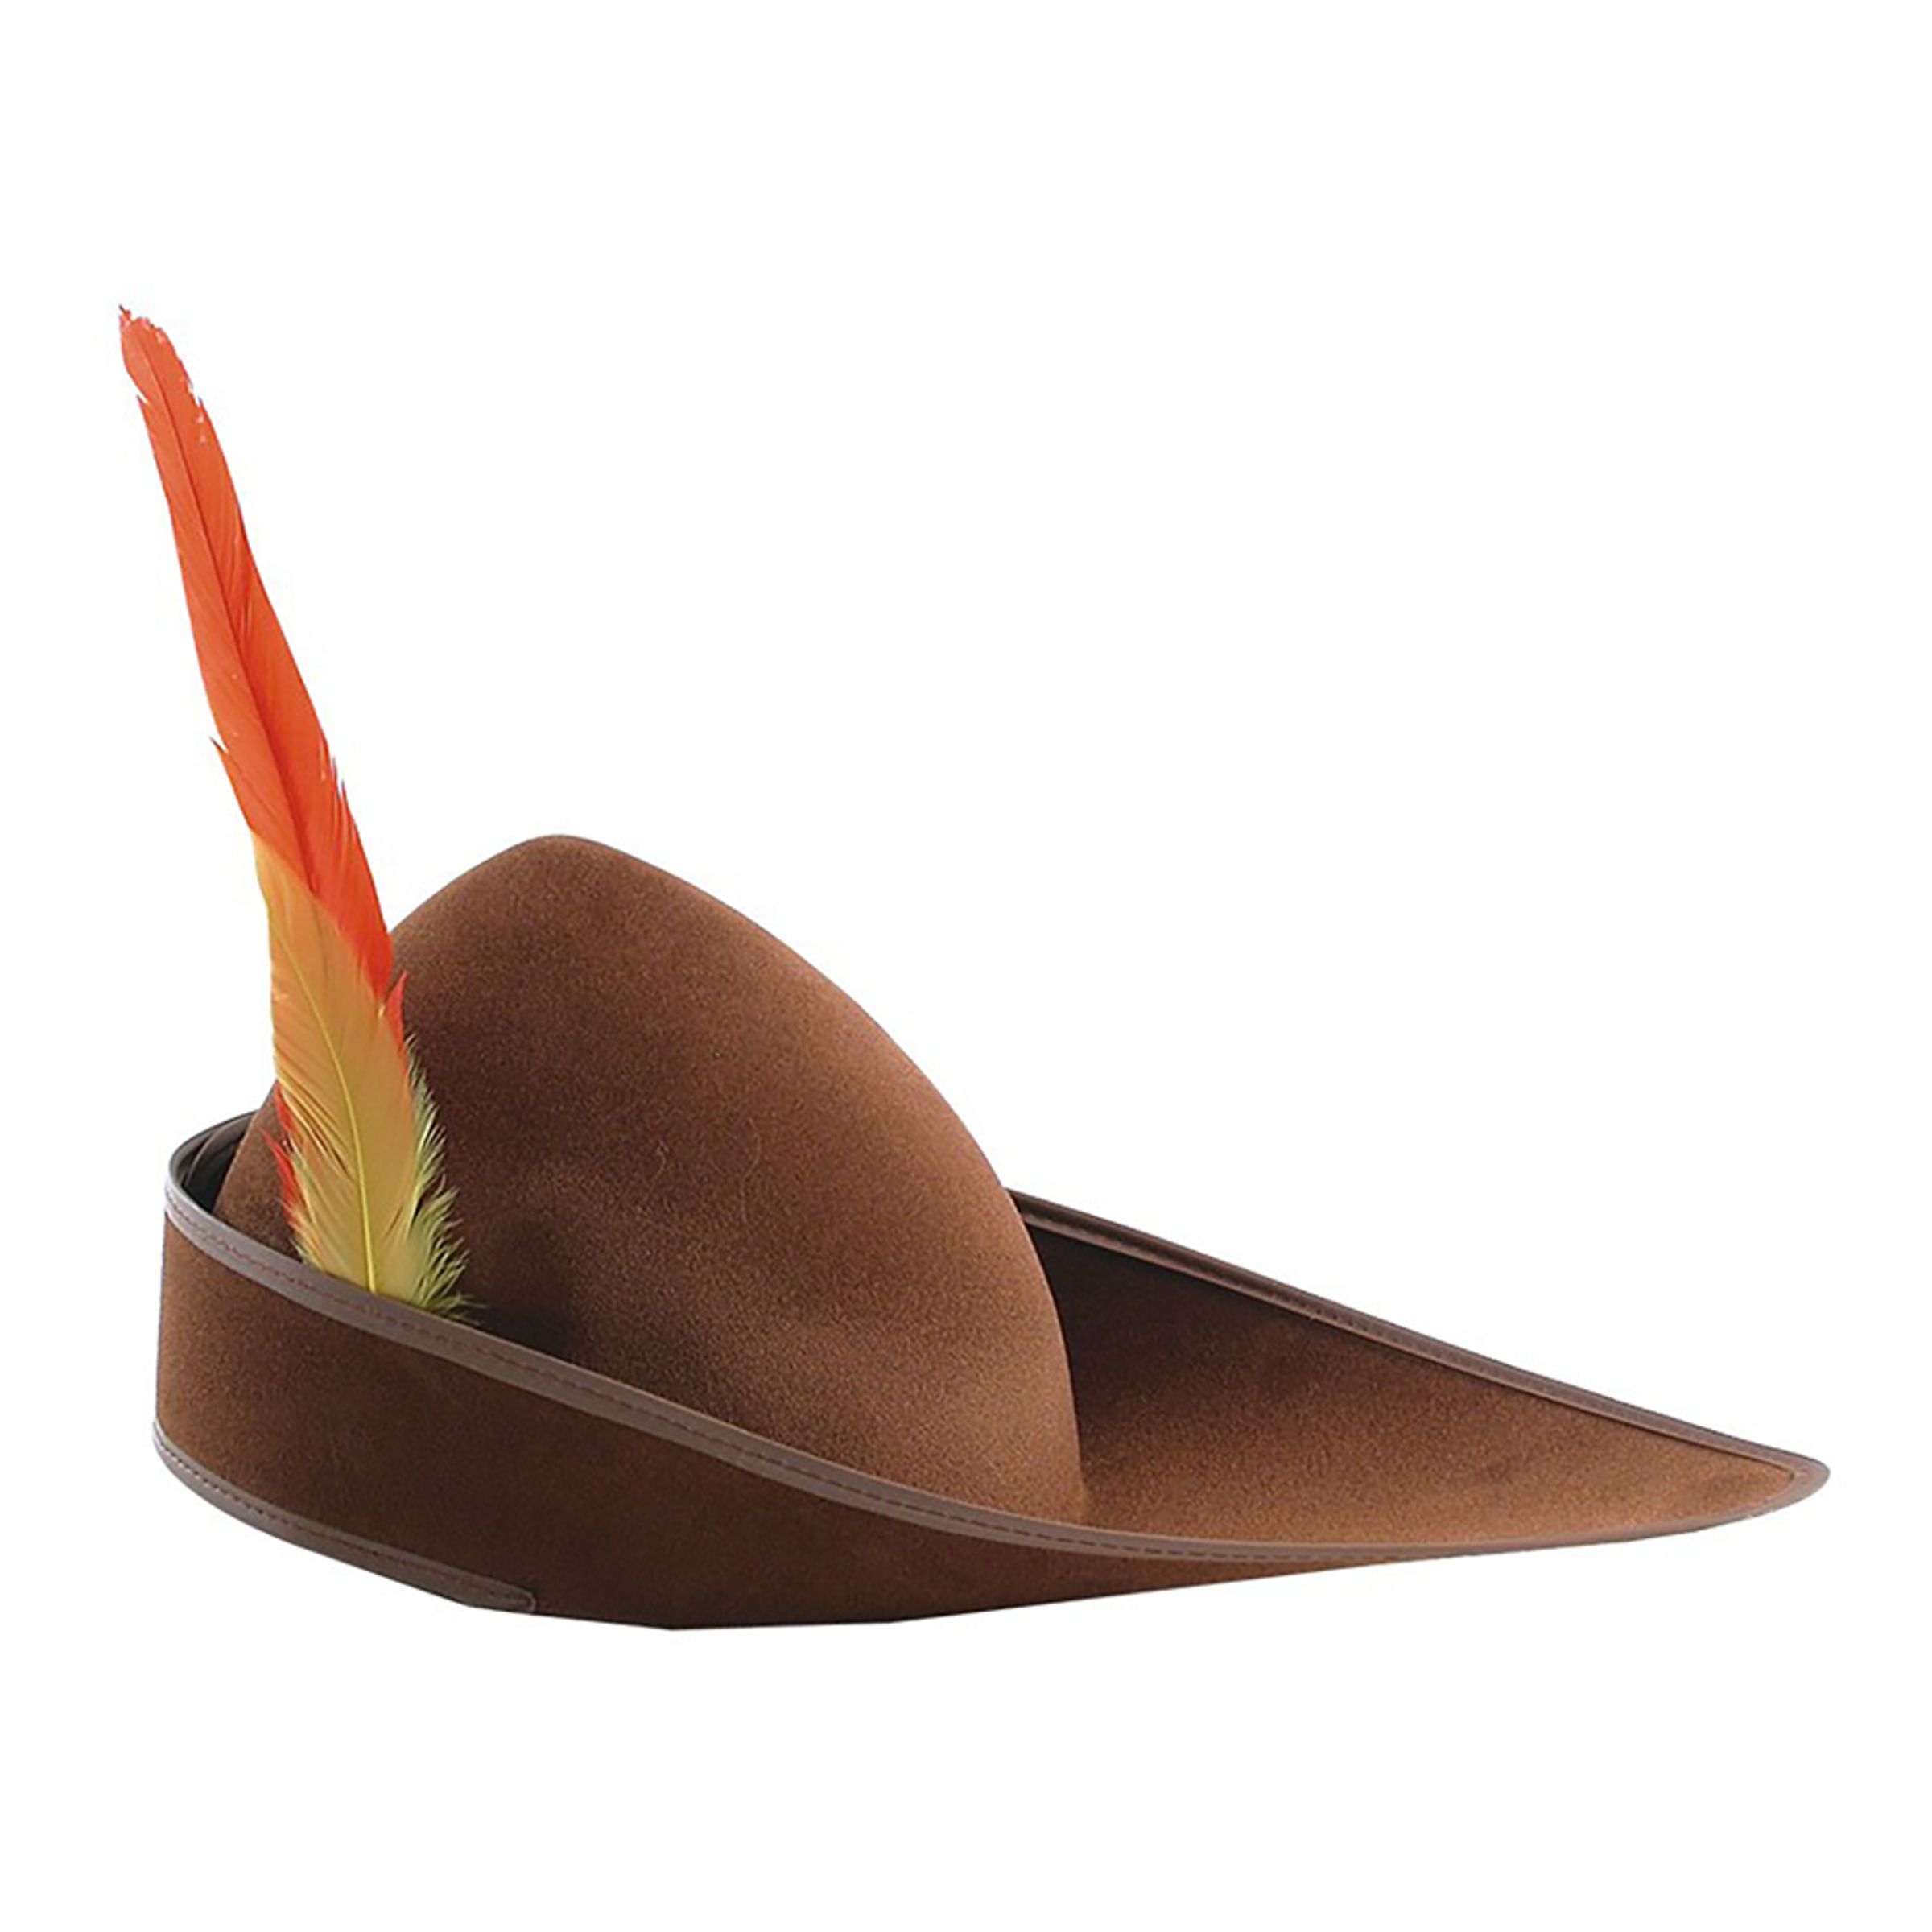 Bågskytt Hatt - One size